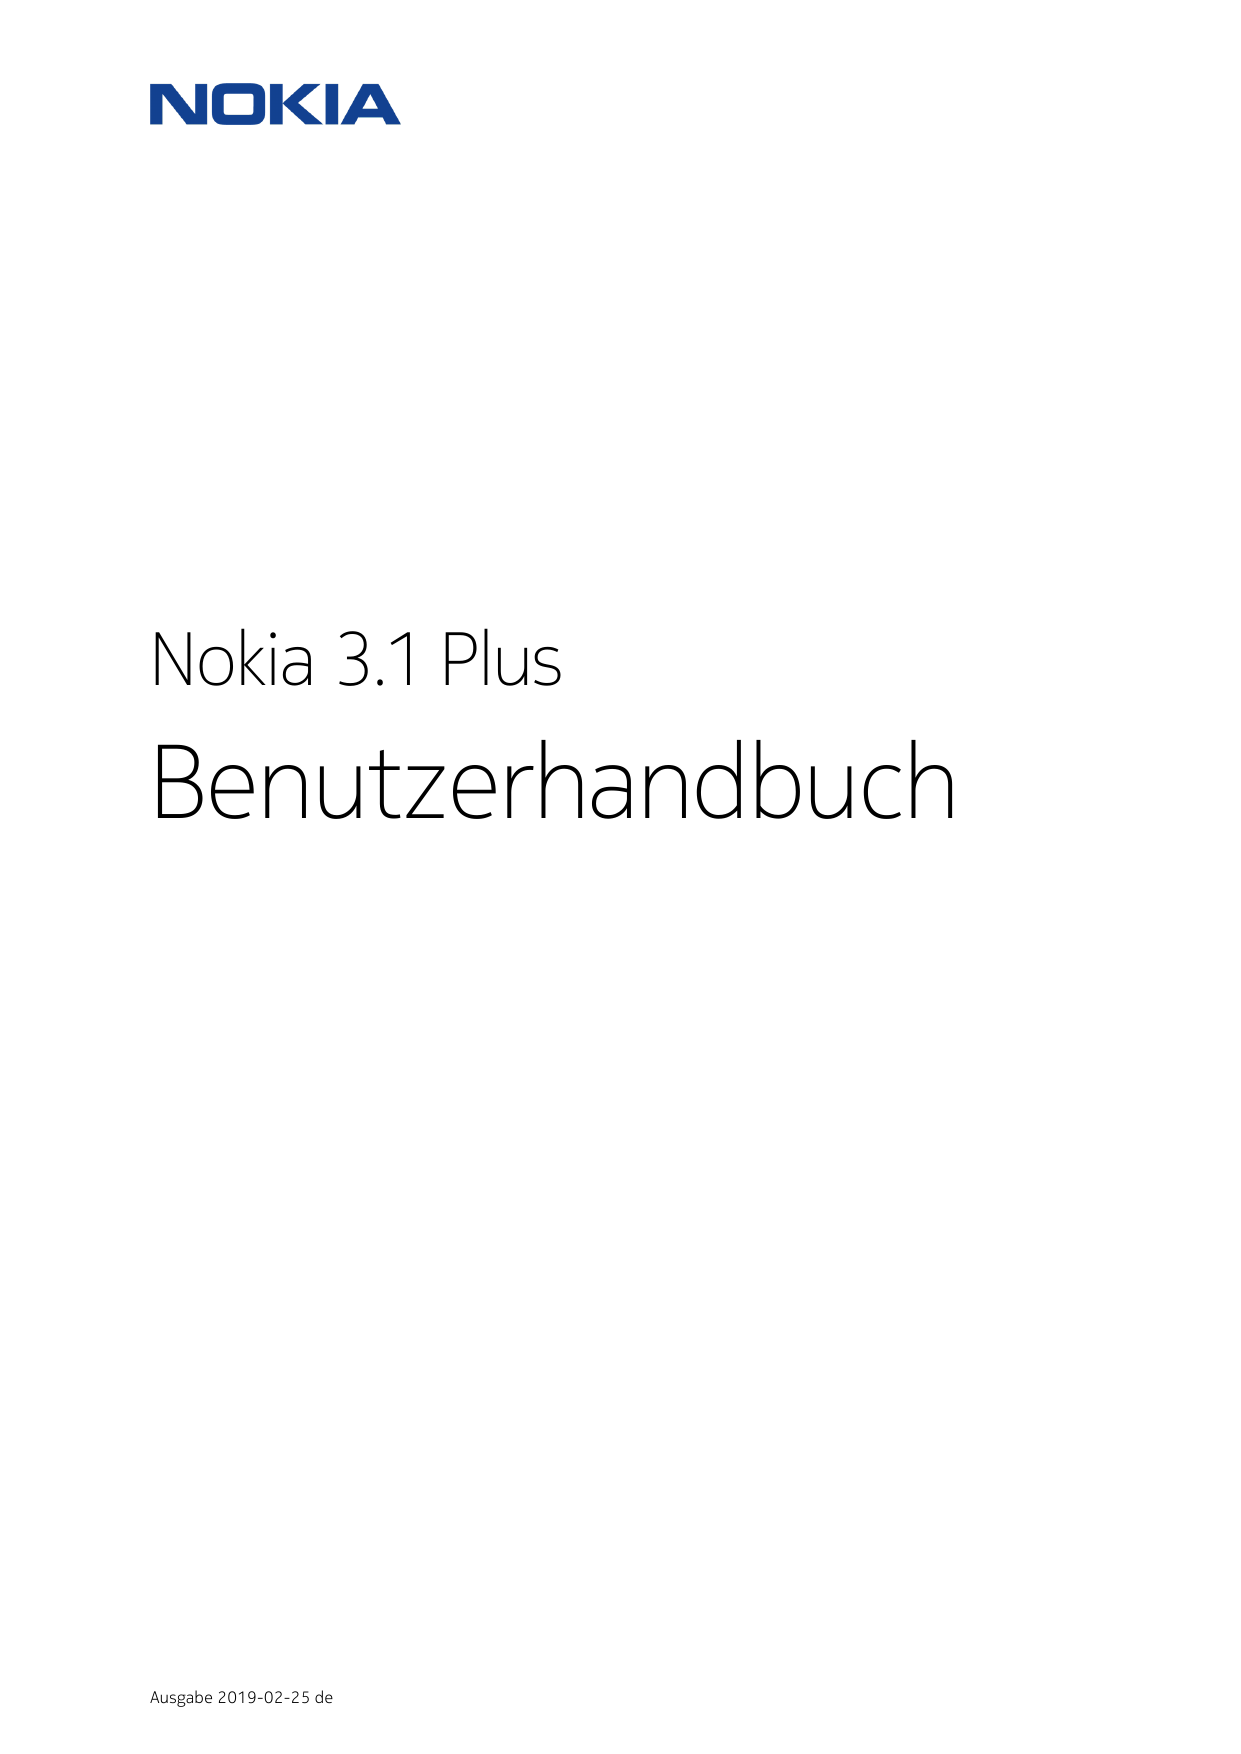 Nokia 3.1 PlusBenutzerhandbuchAusgabe 2019-02-25 de